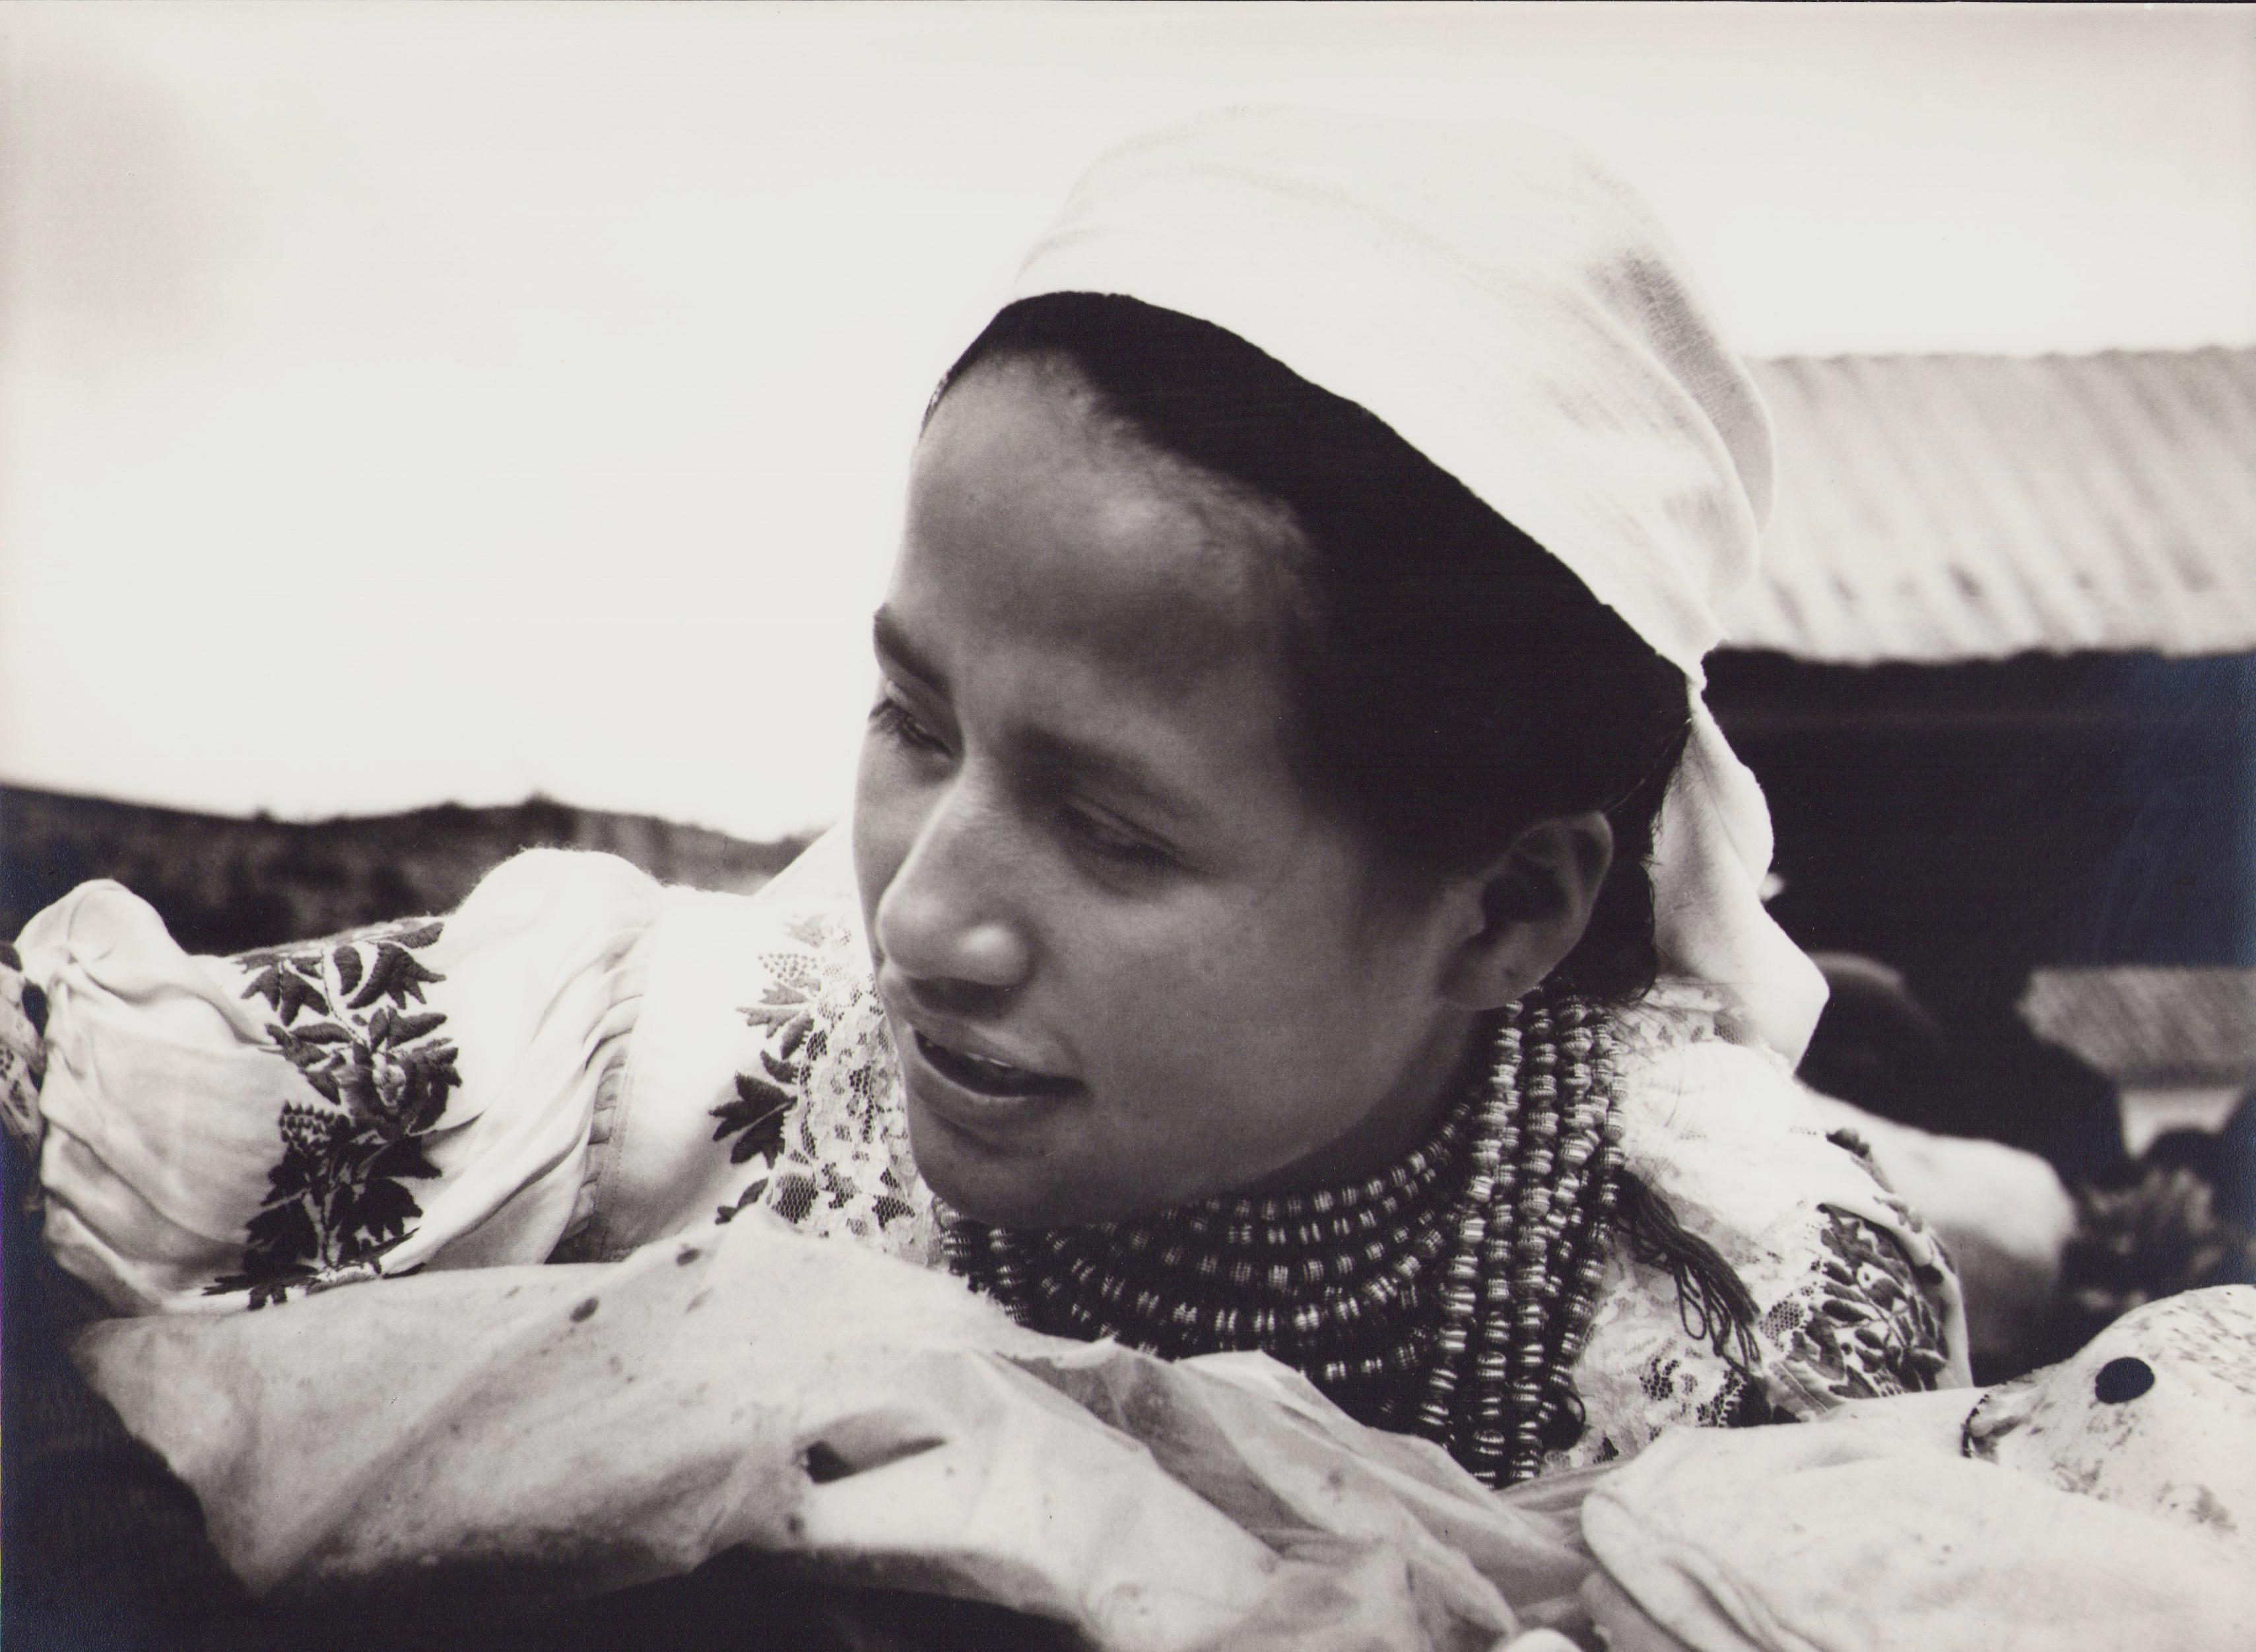 Hanna Seidel Portrait Photograph - Ecuador, Indigenous Woman, Black and White Photography, 1960s, 21, 4 x 29 cm